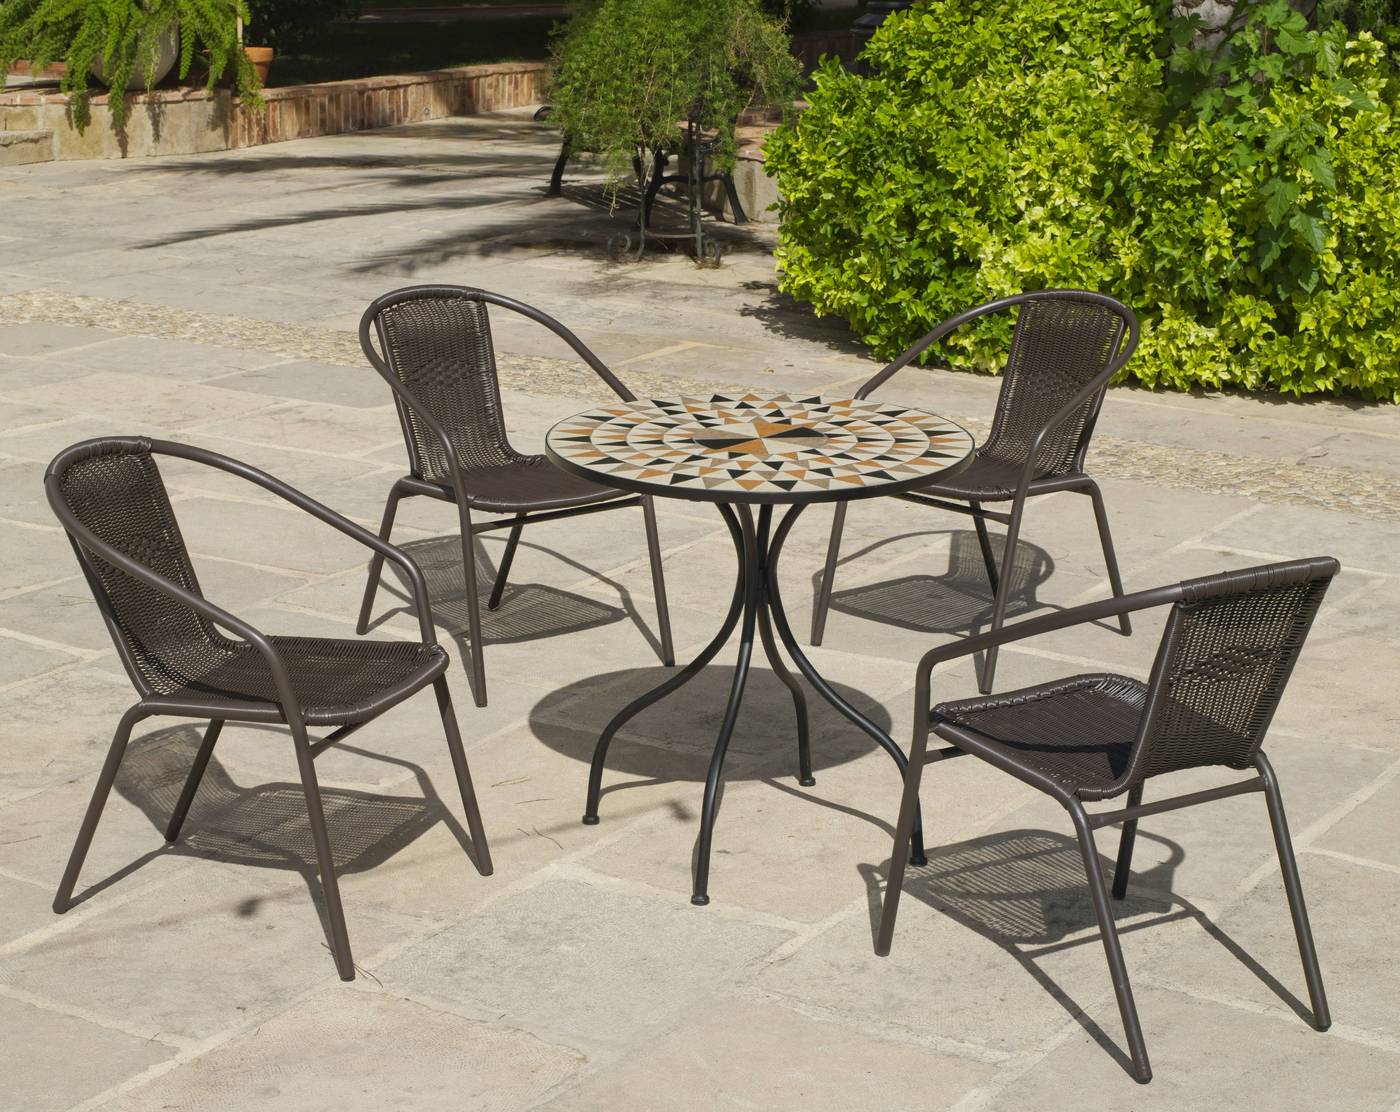 Conjunto de acero forjado color gris: mesa redonda con tablero mosaico de 75 cm. + 4 sillones apilables de wicker